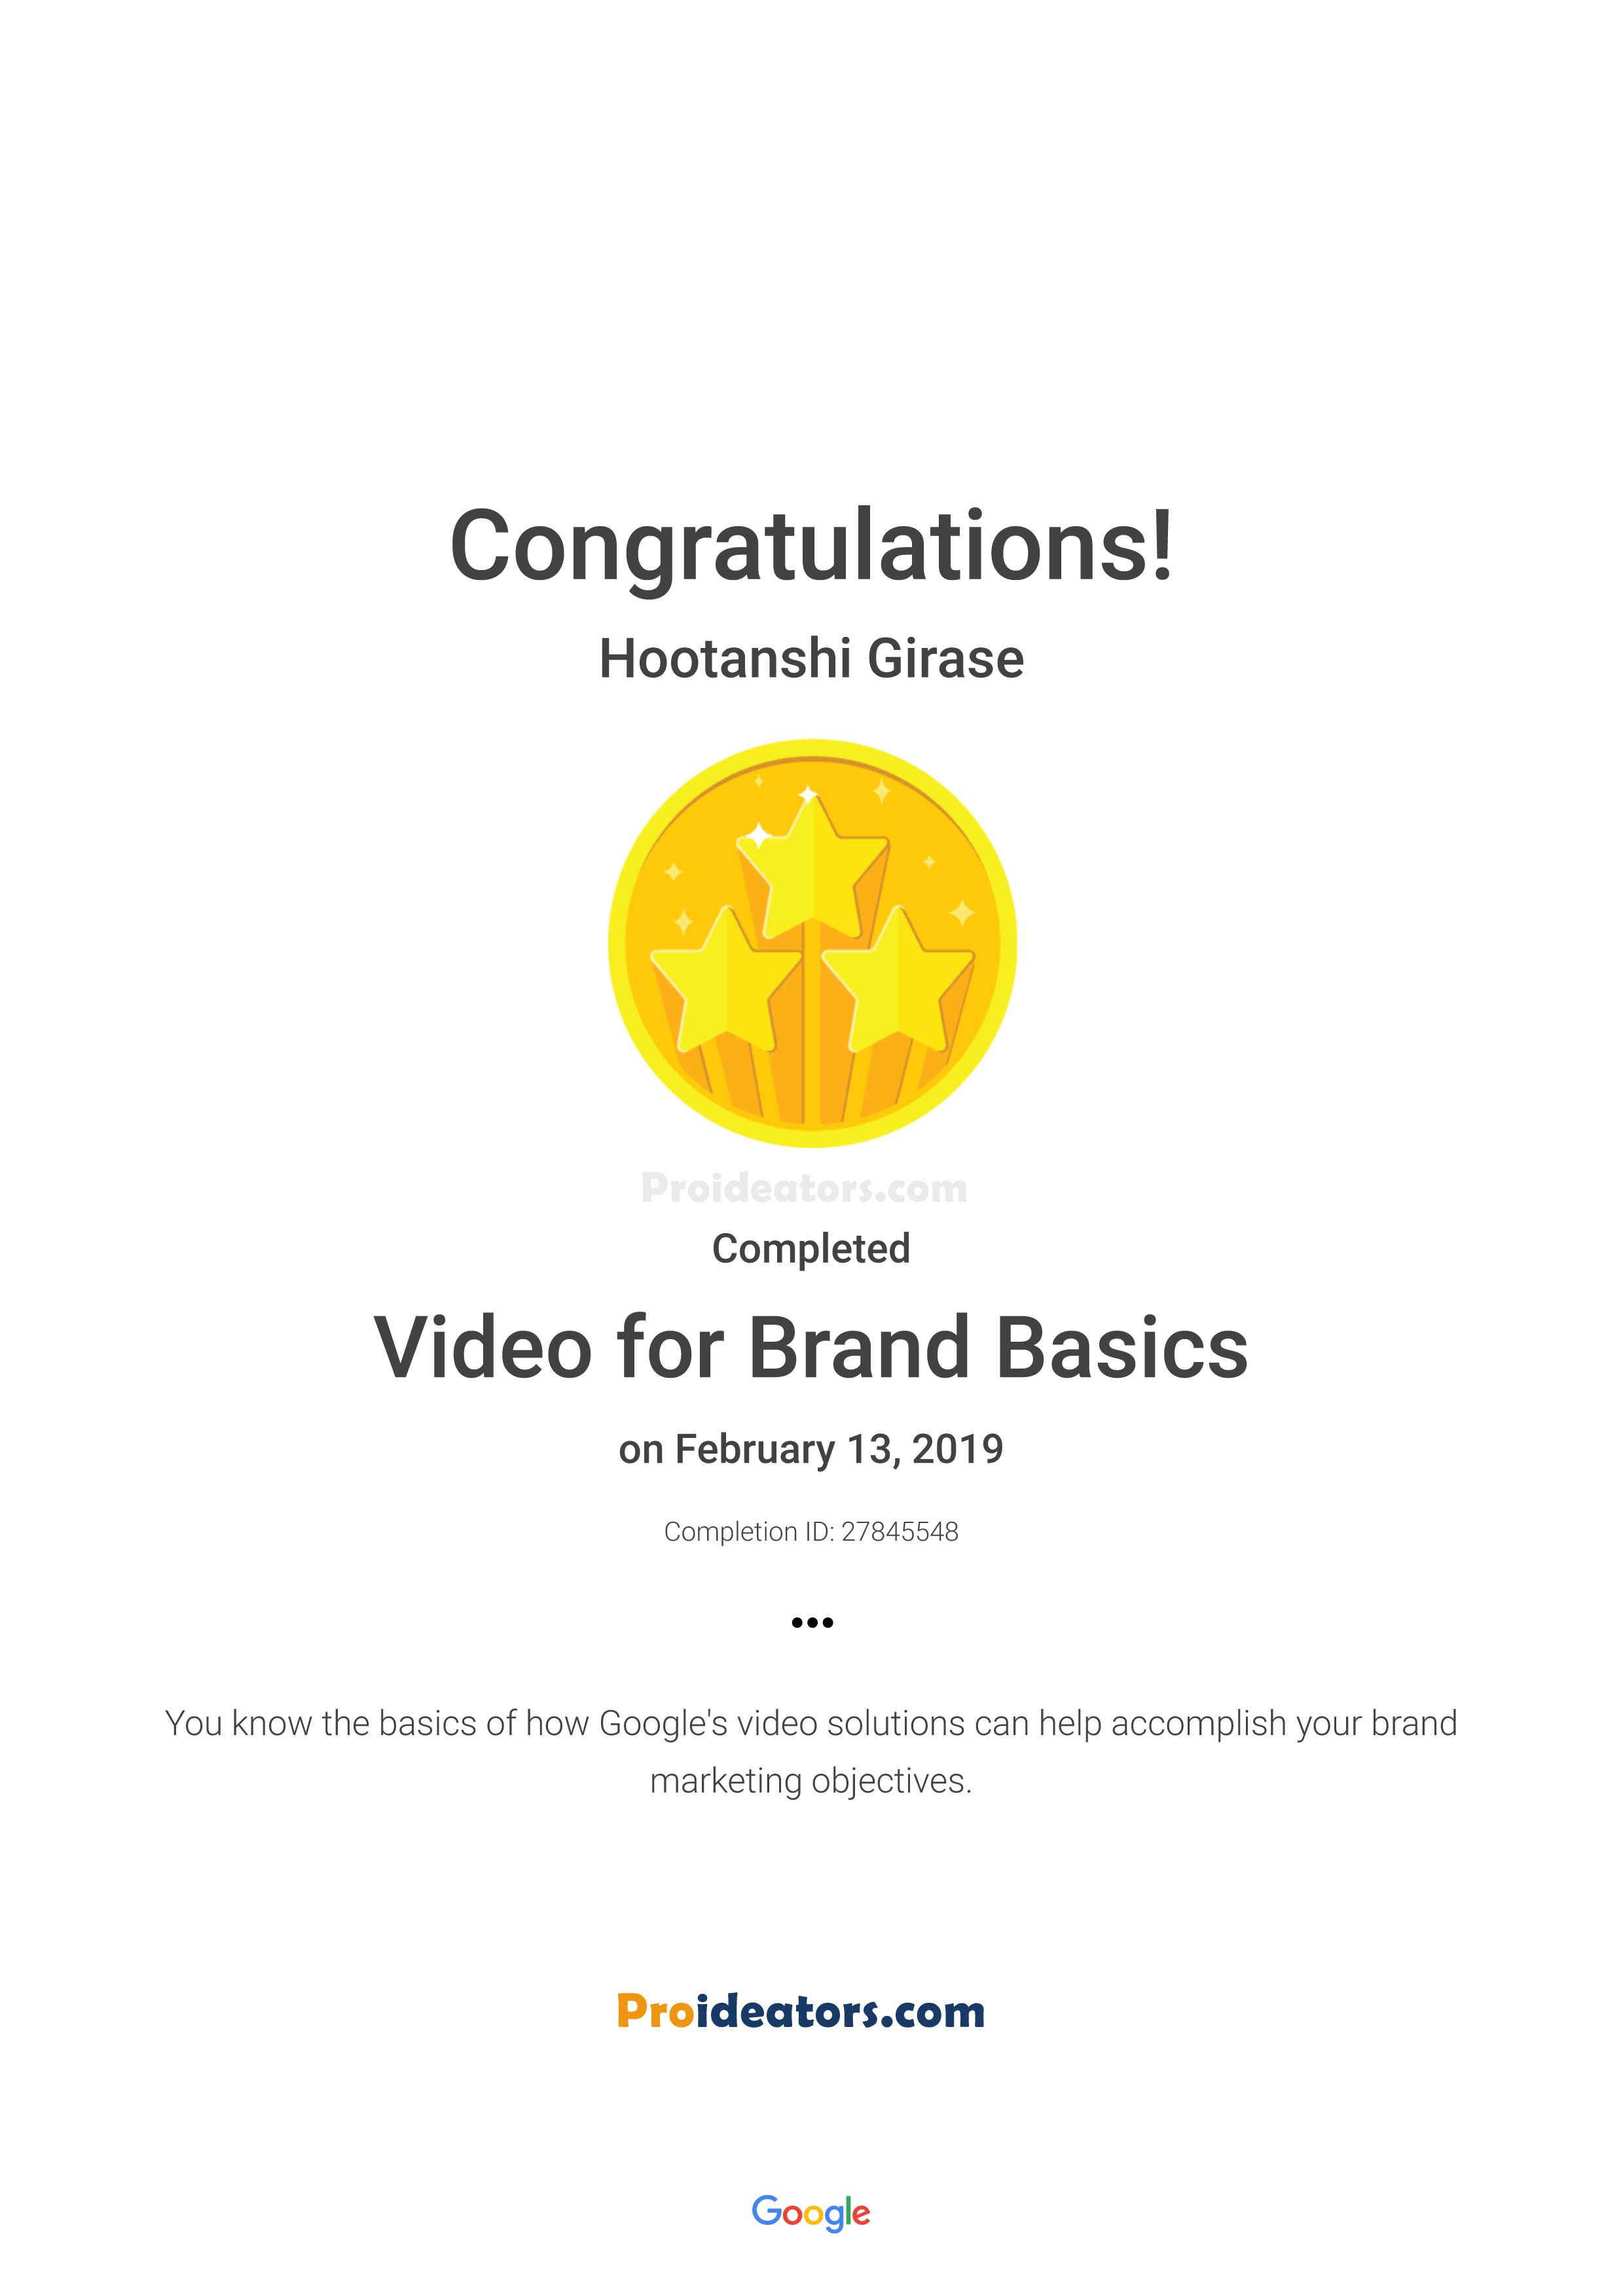 Google Video for Brand Basics